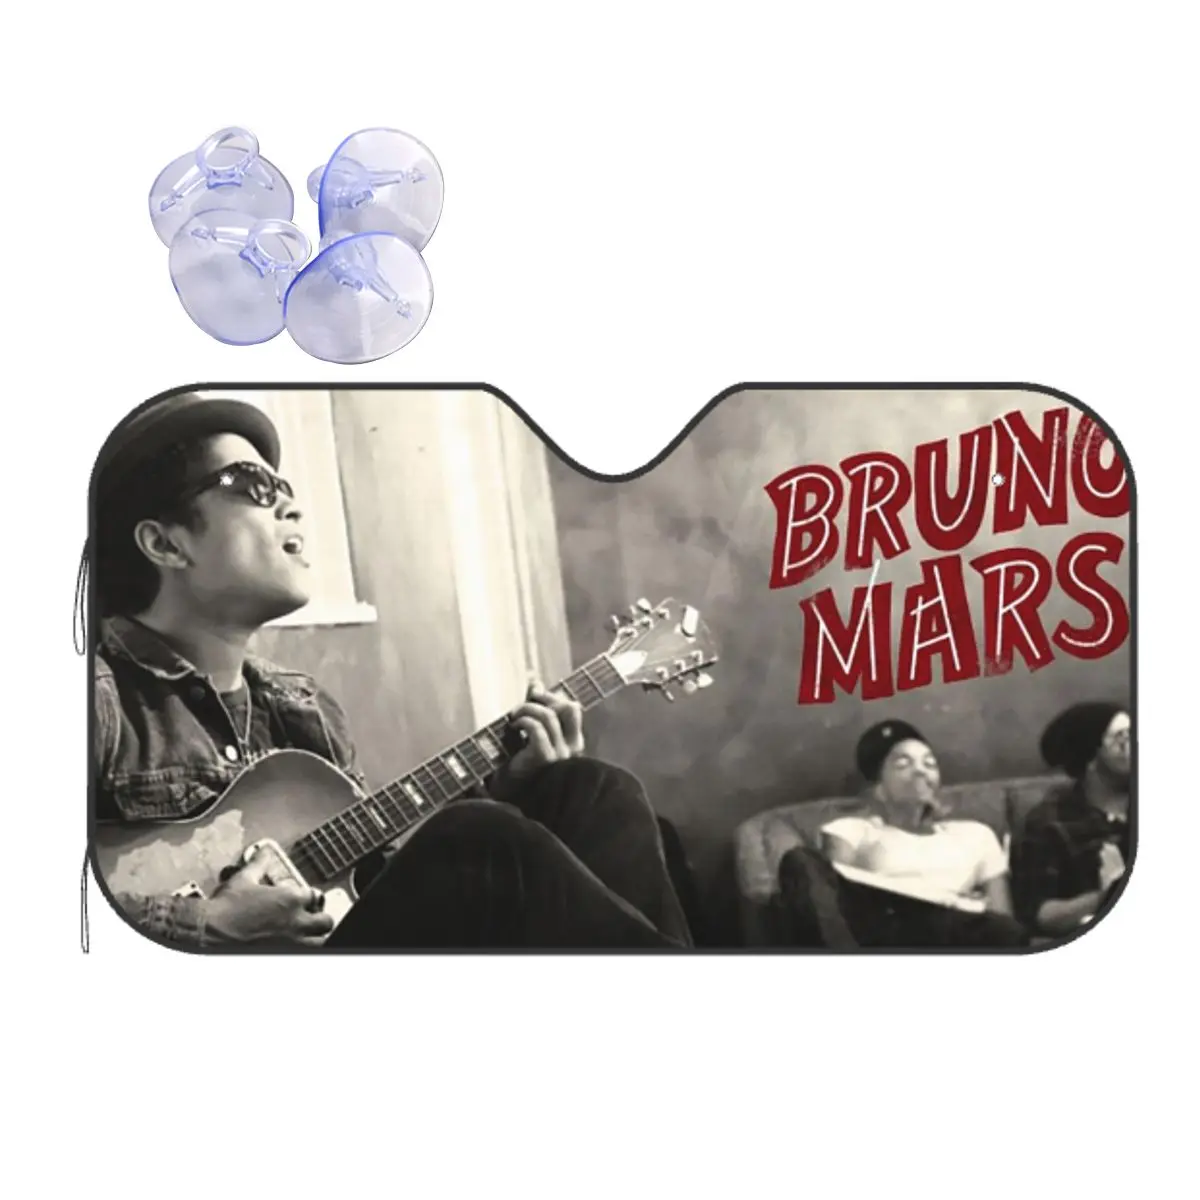 Солнцезащитный козырек Bruno Mars Fashion на лобовое стекло 70x130 см, солнцезащитный козырек из фольги, солнцезащитный козырек для защиты от солнца